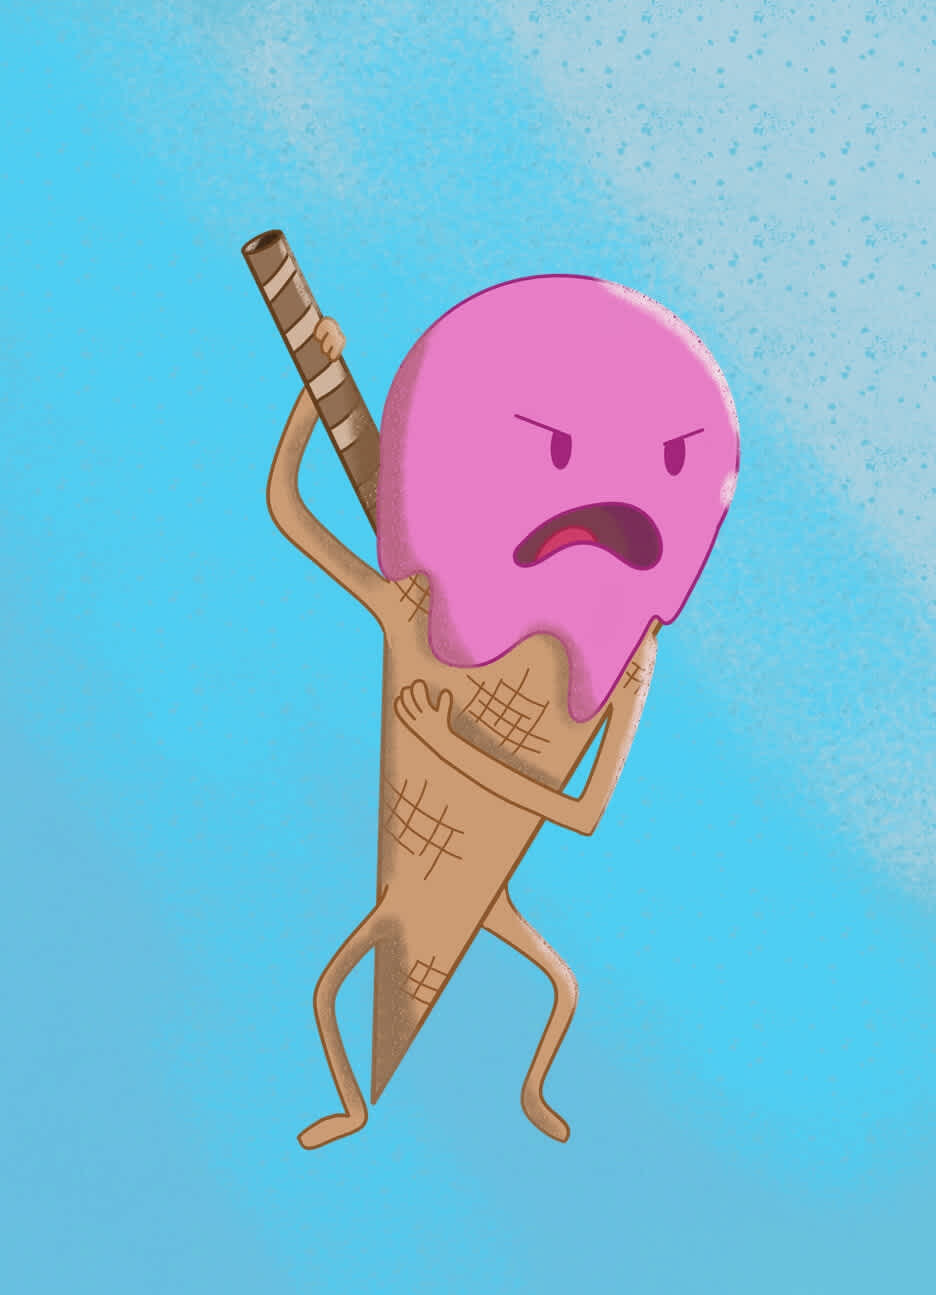 Mr. Ice Cream